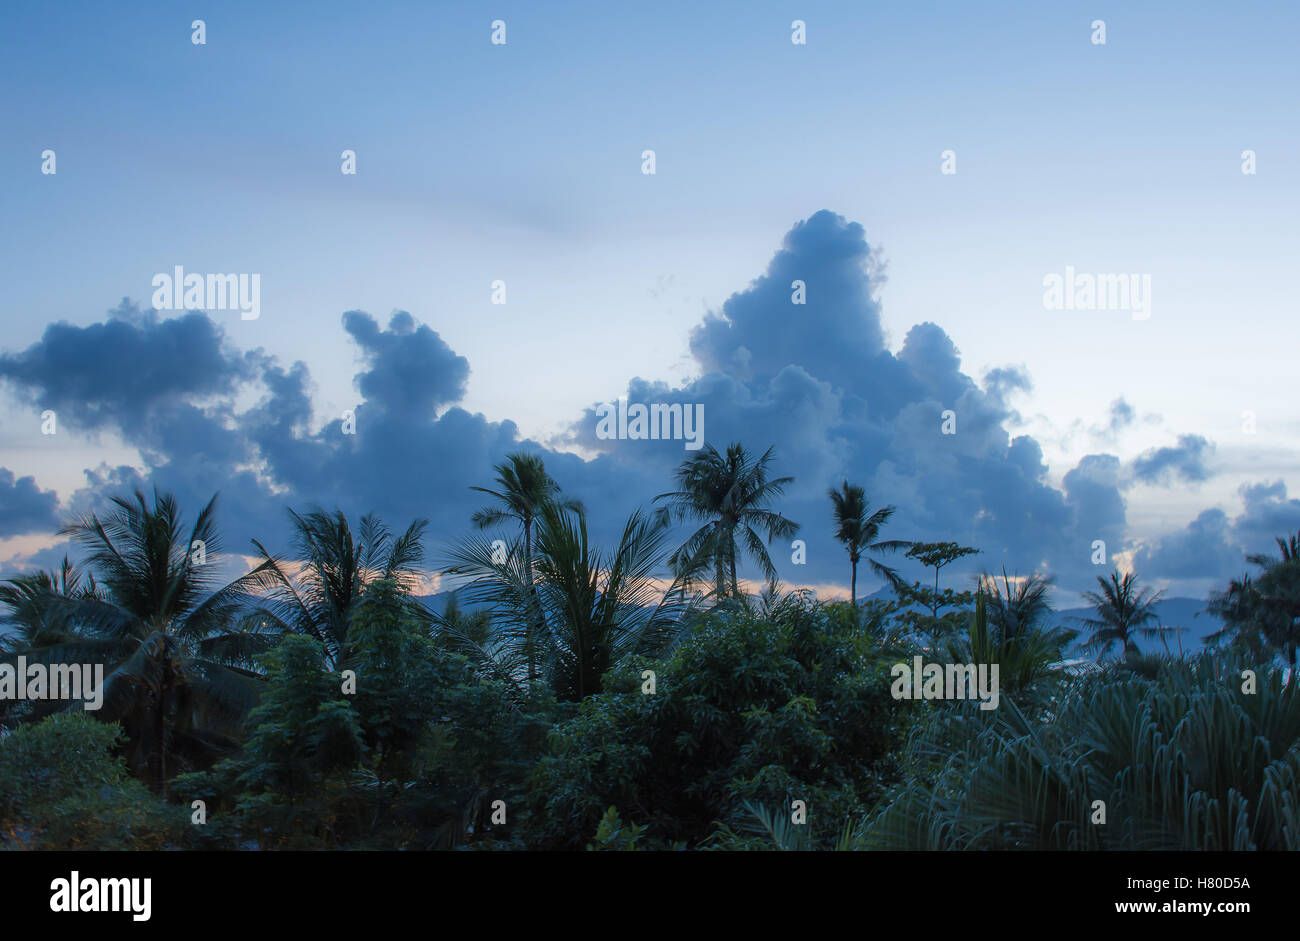 Hermoso paisaje de sorprendentes formaciones nubosas en el cielo del atardecer con palmeras antes del anochecer Foto de stock